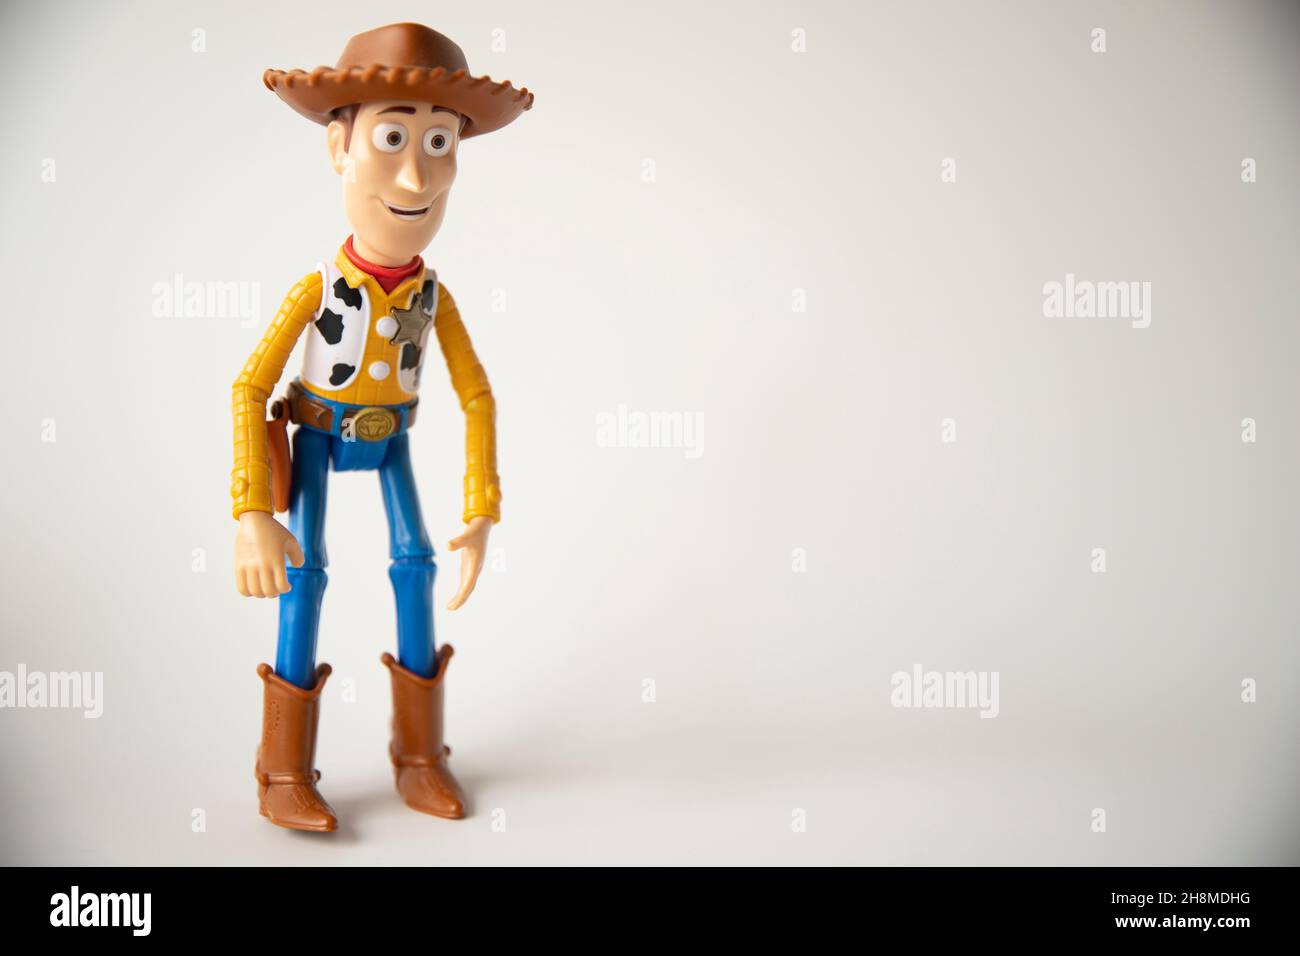 Vaquero de dibujos animados fotografías e imágenes de alta resolución -  Alamy